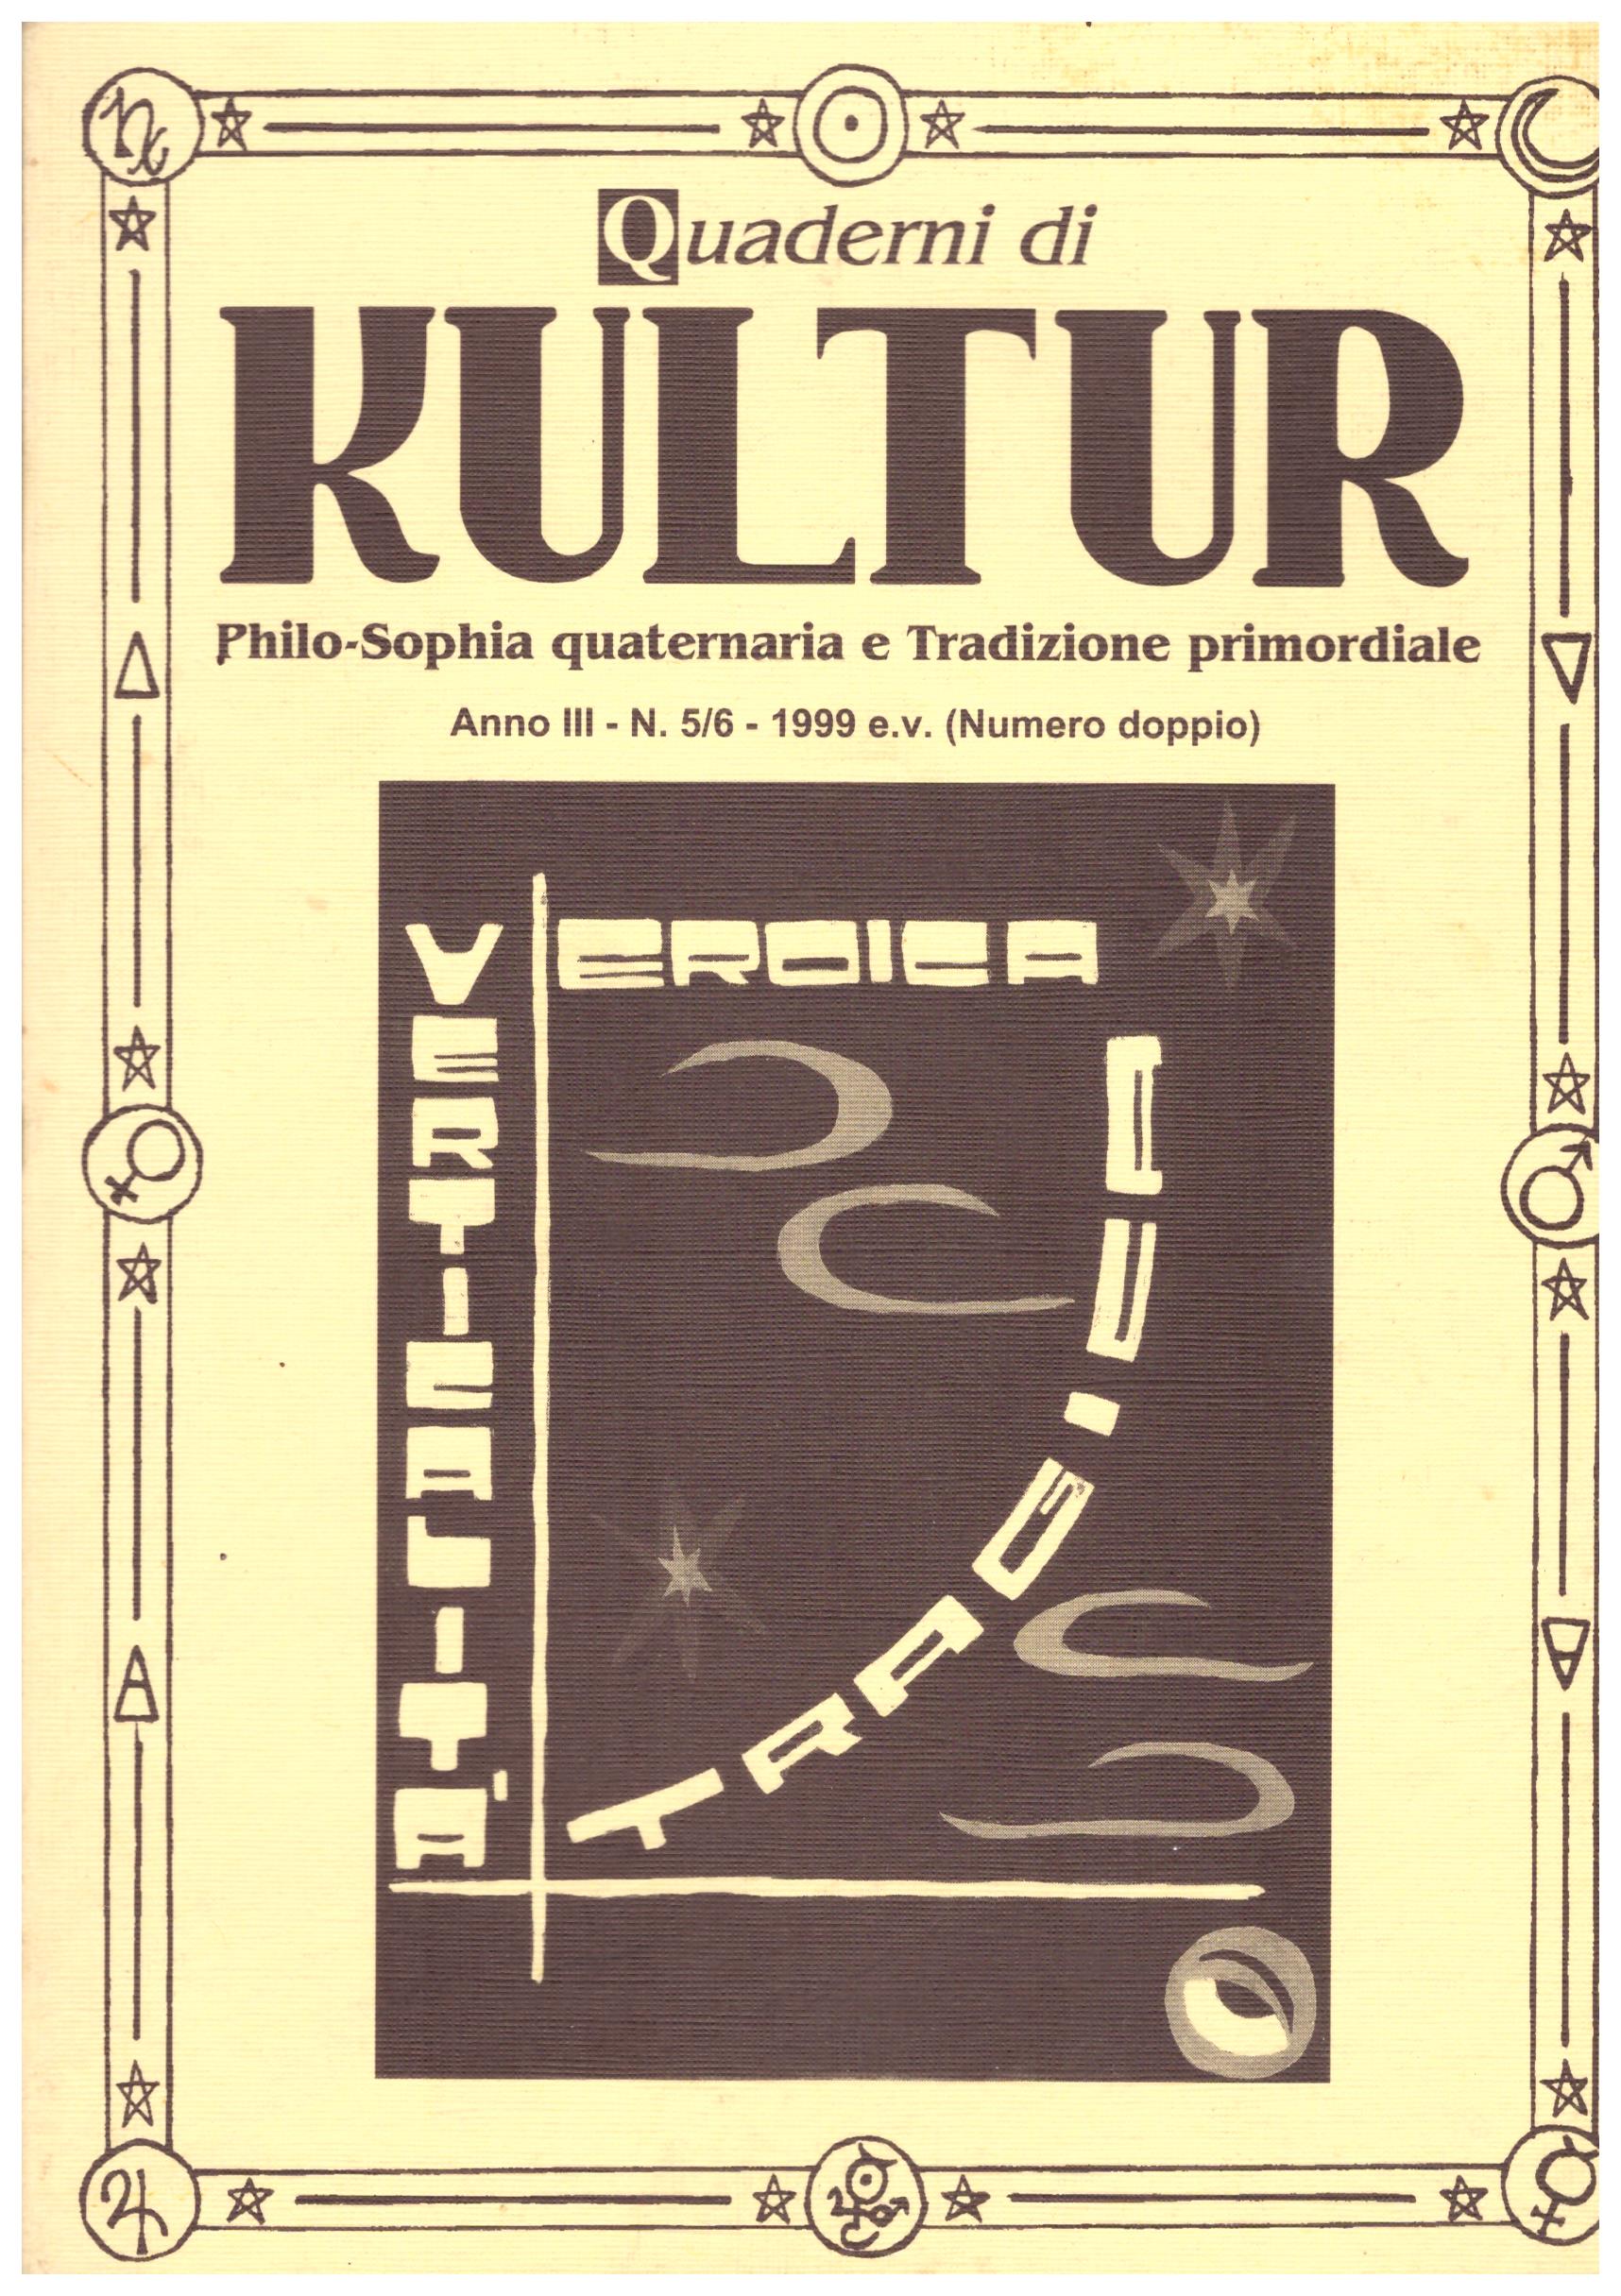 Quaderni di Kultur. Philo-Sophia quaternaria e Tradizione primordiale. Anno III - N. 5/6 - 1999 e.v (numero doppio)